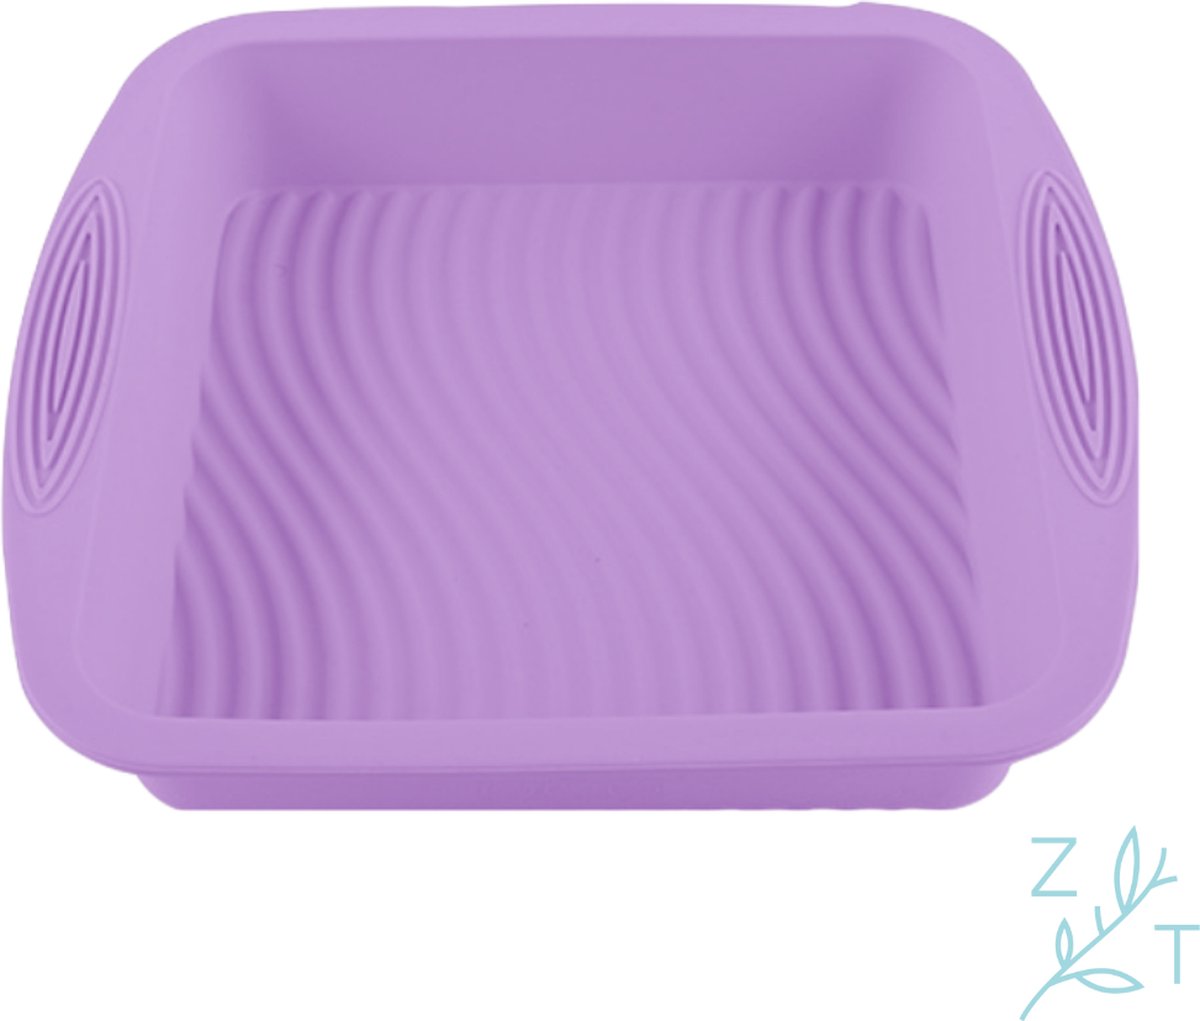 ZijTak - Vierkante bakvorm - siliconen - bakblik - paars